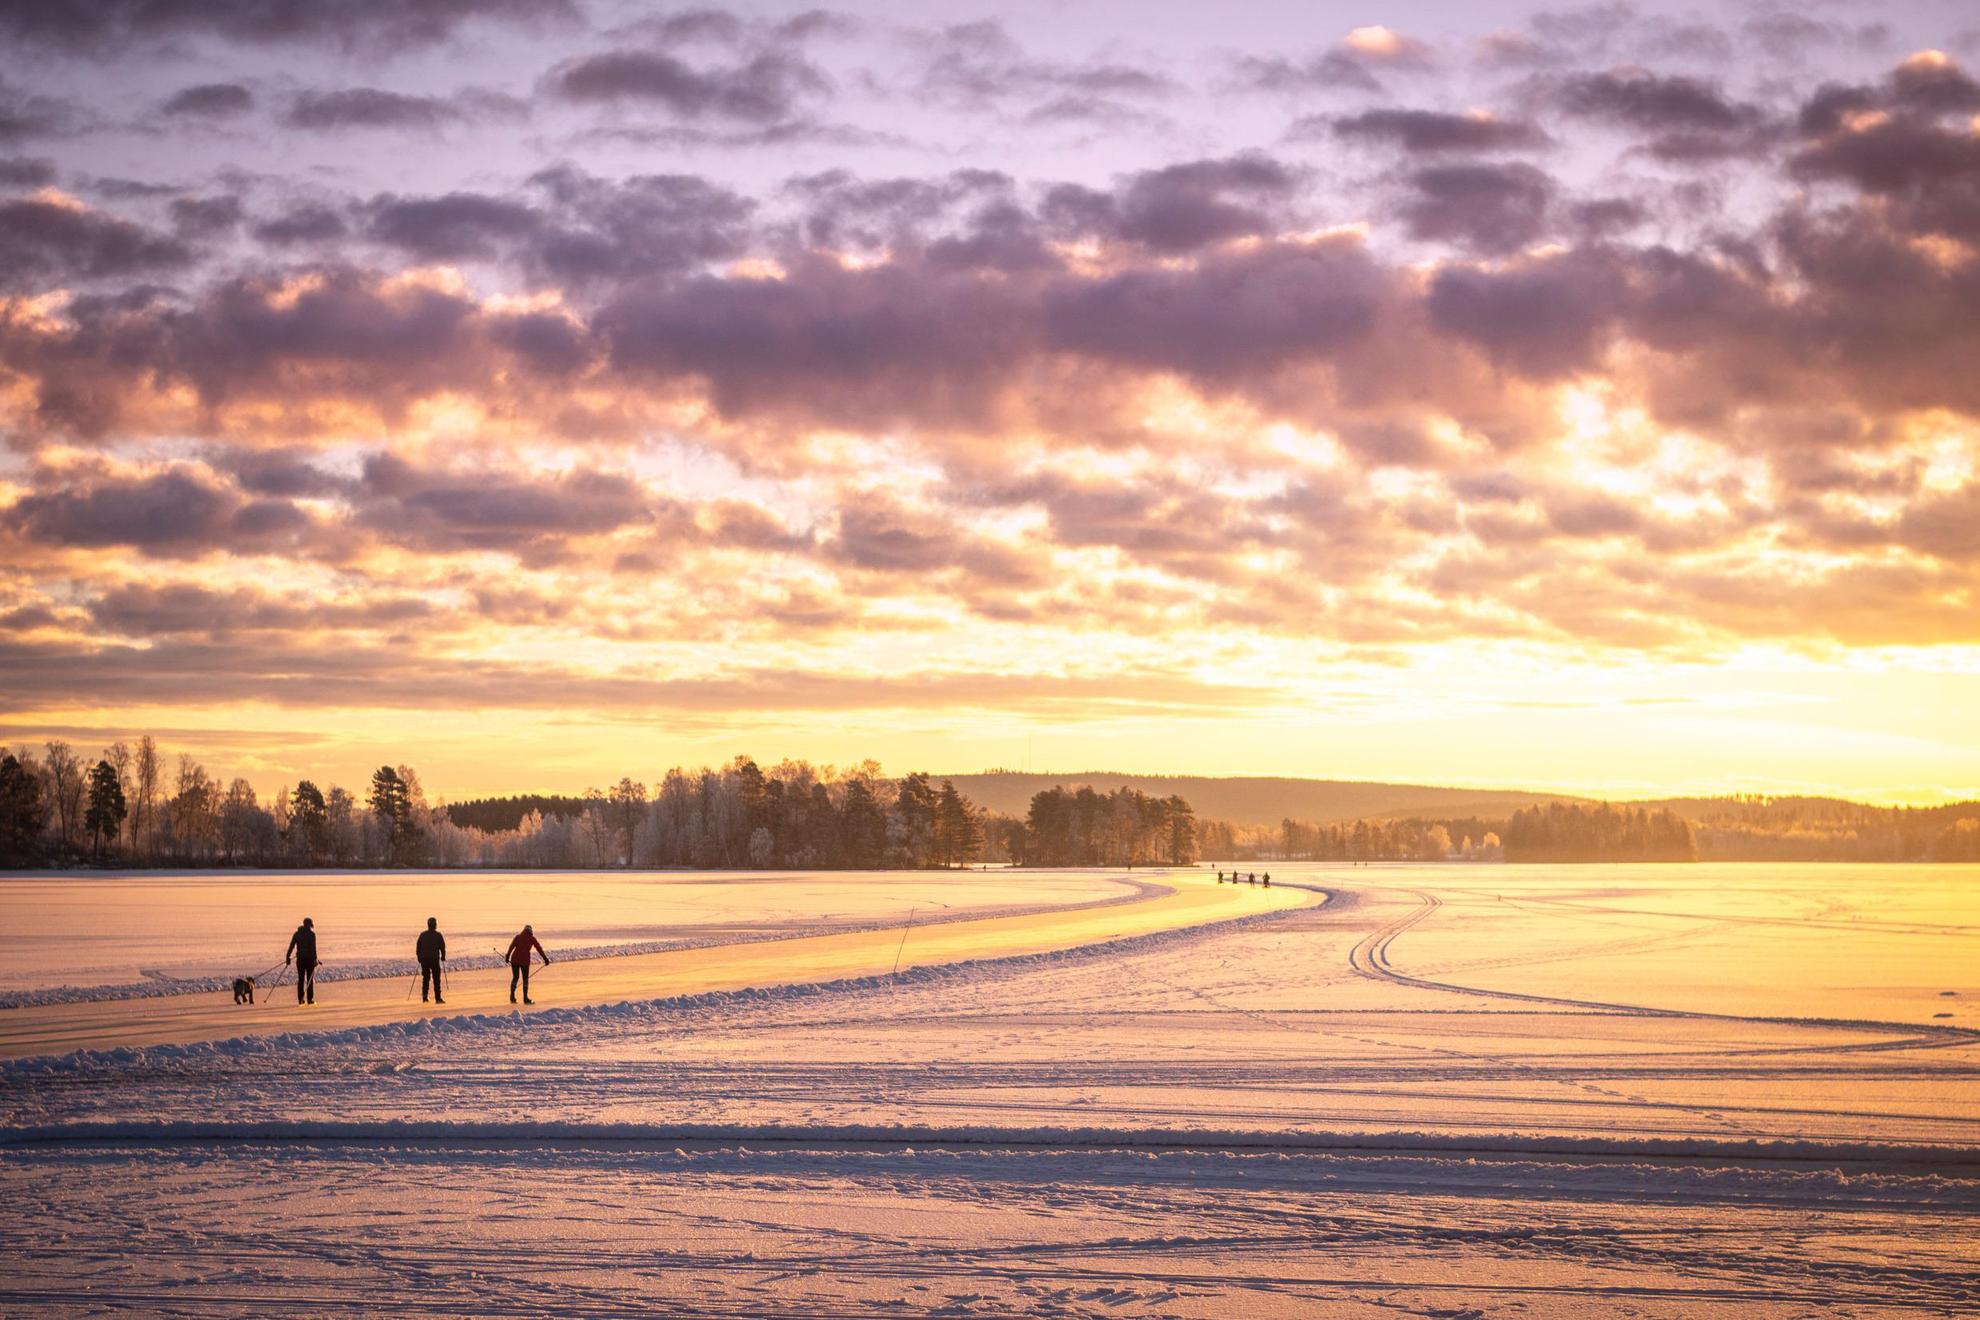 Silhouet van drie mensen die schaatsen op een bevroren meer. De zon schijnt oranje.